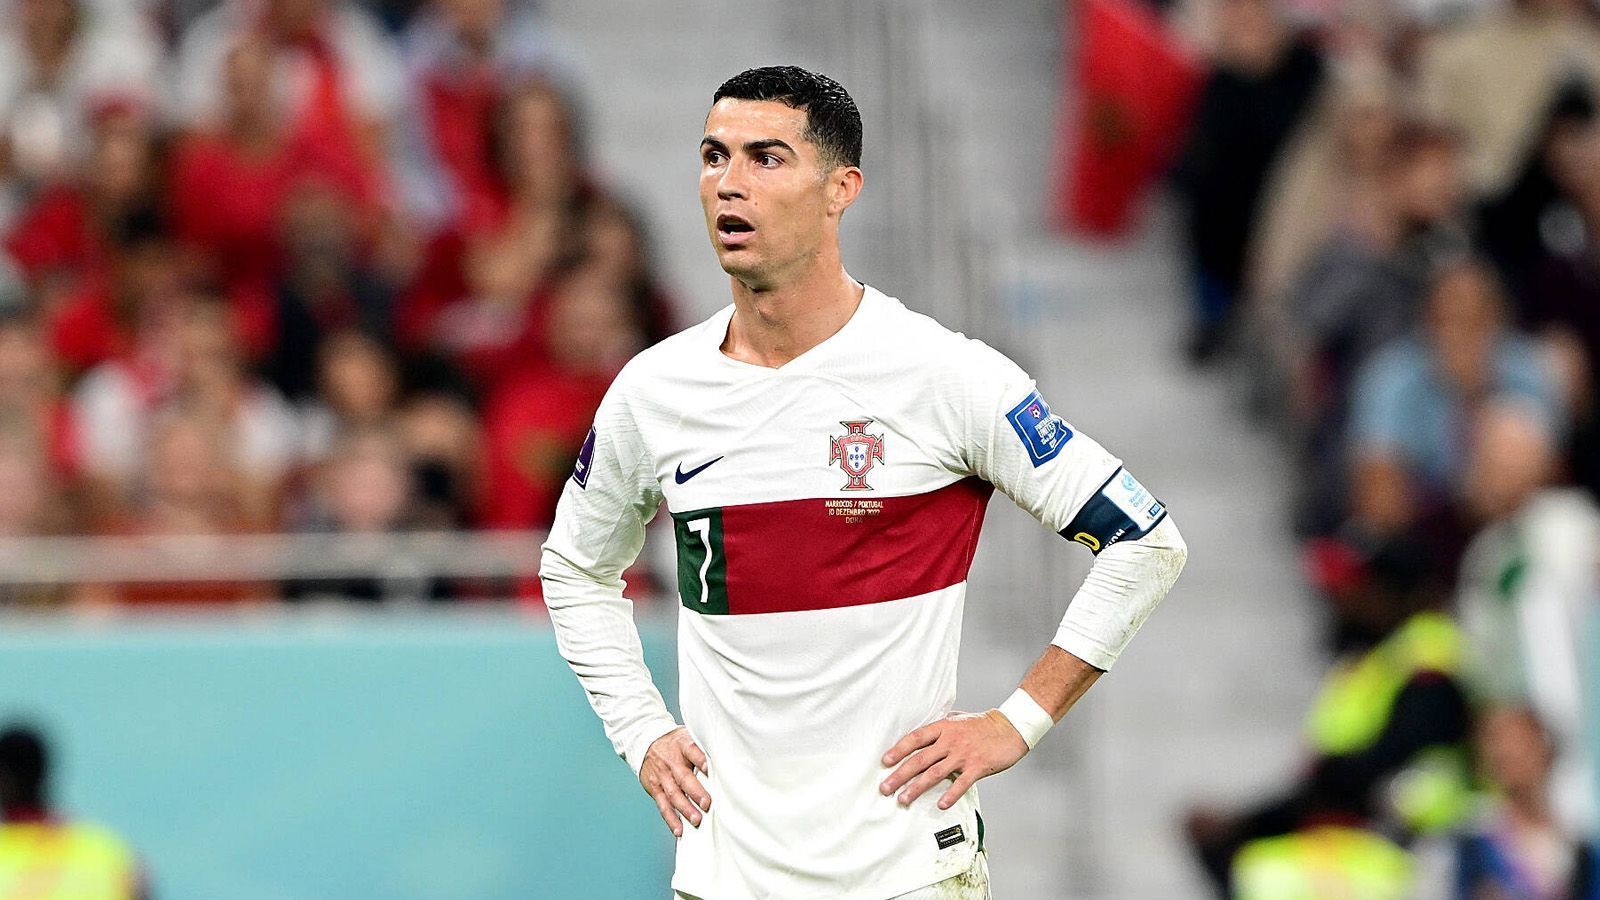 
                <strong>Al-Nassr - Termin für Medizincheck?</strong><br>
                Ein Wechsel von Cristiano Ronaldo zum saudi-arabischen Klub Al-Nassr scheint konkreter zu werden. Angeblich soll der portugiesische Superstar einen Termin zum Medizincheck erhalten, berichtete "CBS Sports". Die Online-Plattform bezieht sich auf eine Quelle aus dem Verein. Nach seinem Abgang von Manchester United ist der 37-Jährige ohne Verein und könnte sich ablösefrei Al-Nassr anschließen. 
              